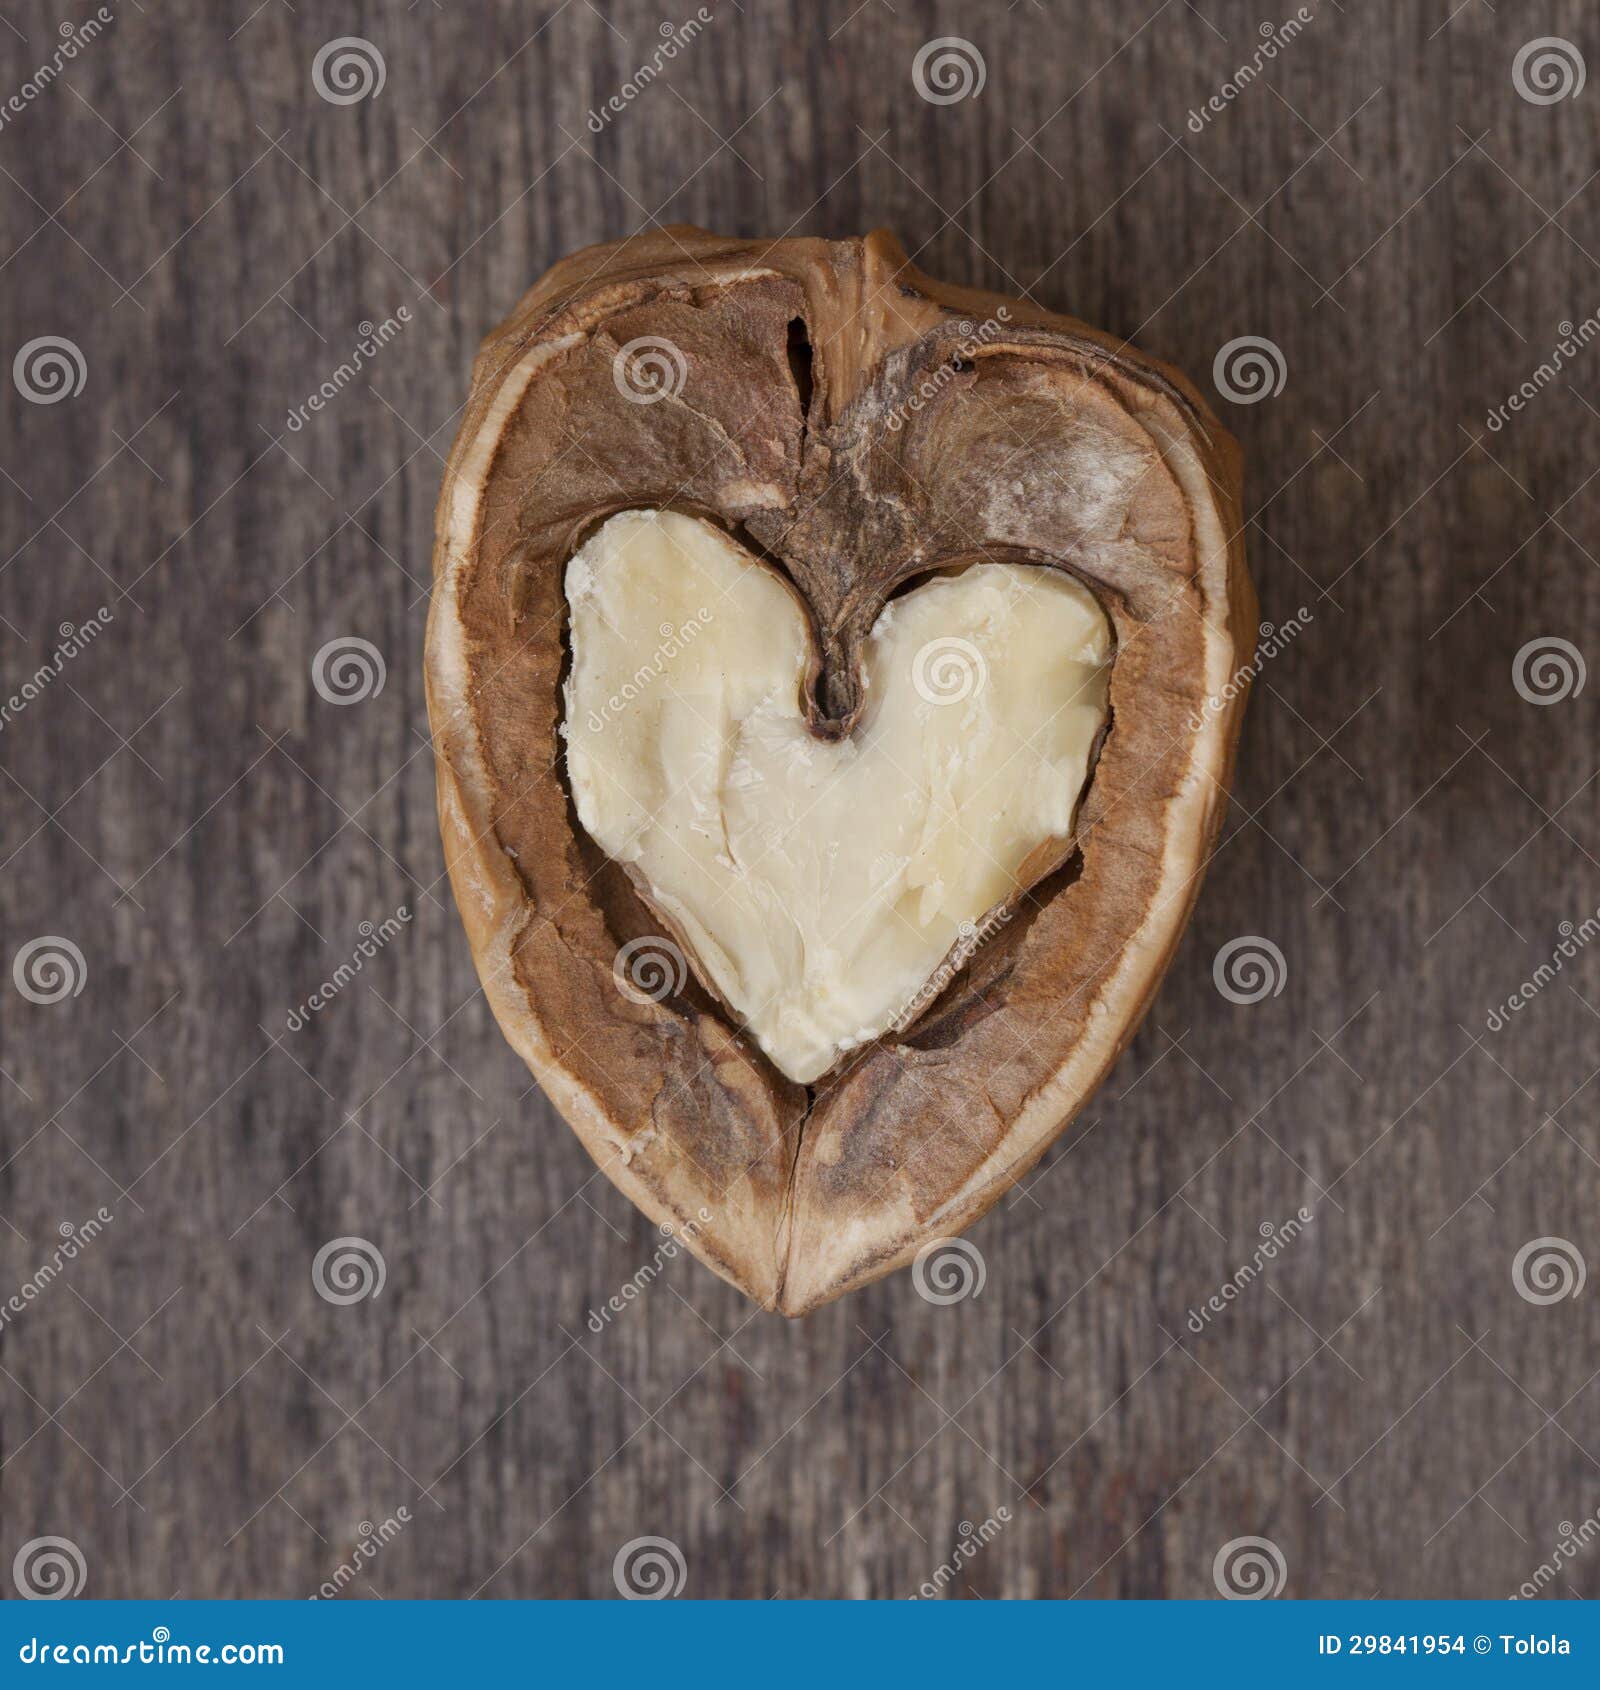 hearted walnut